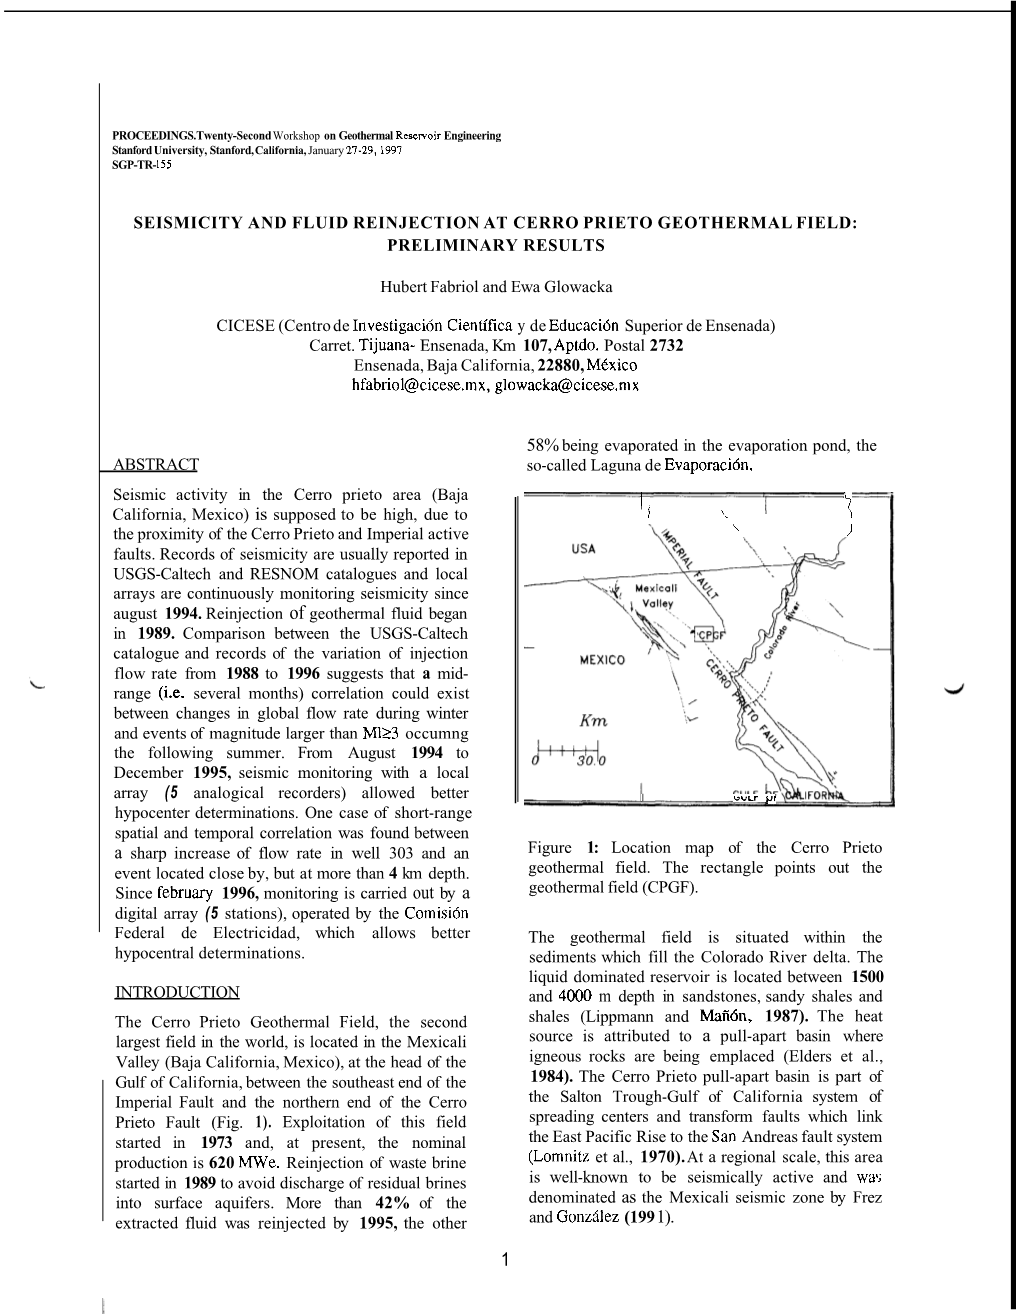 1997, Twenty-Second Workshop on Geothermal Reservoir Engineering